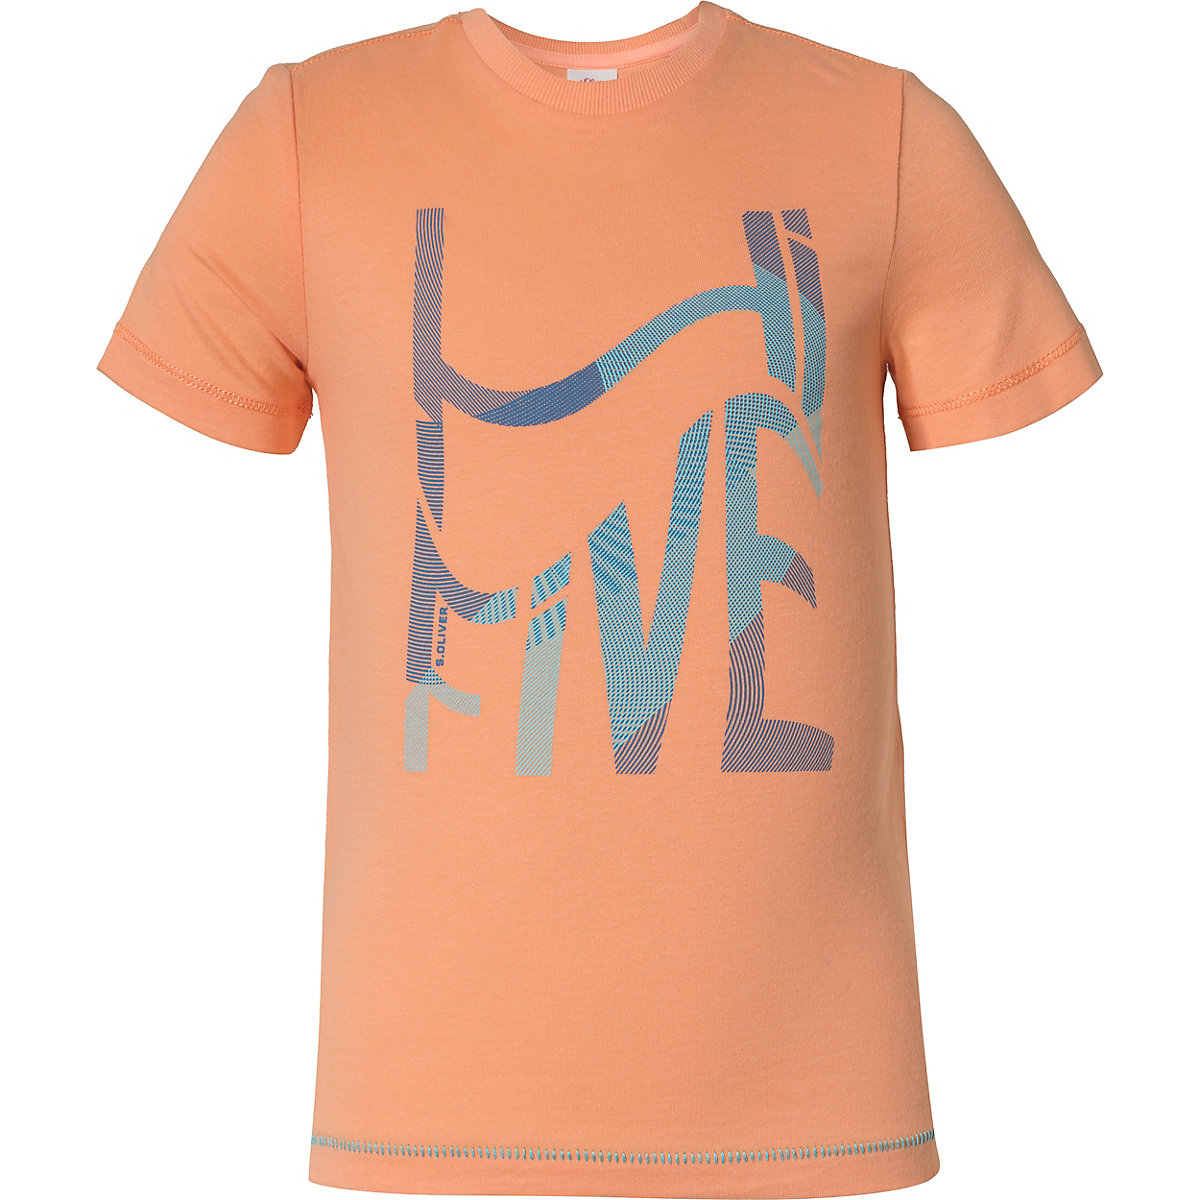 s.Oliver T-Shirt für Jungen hellorange